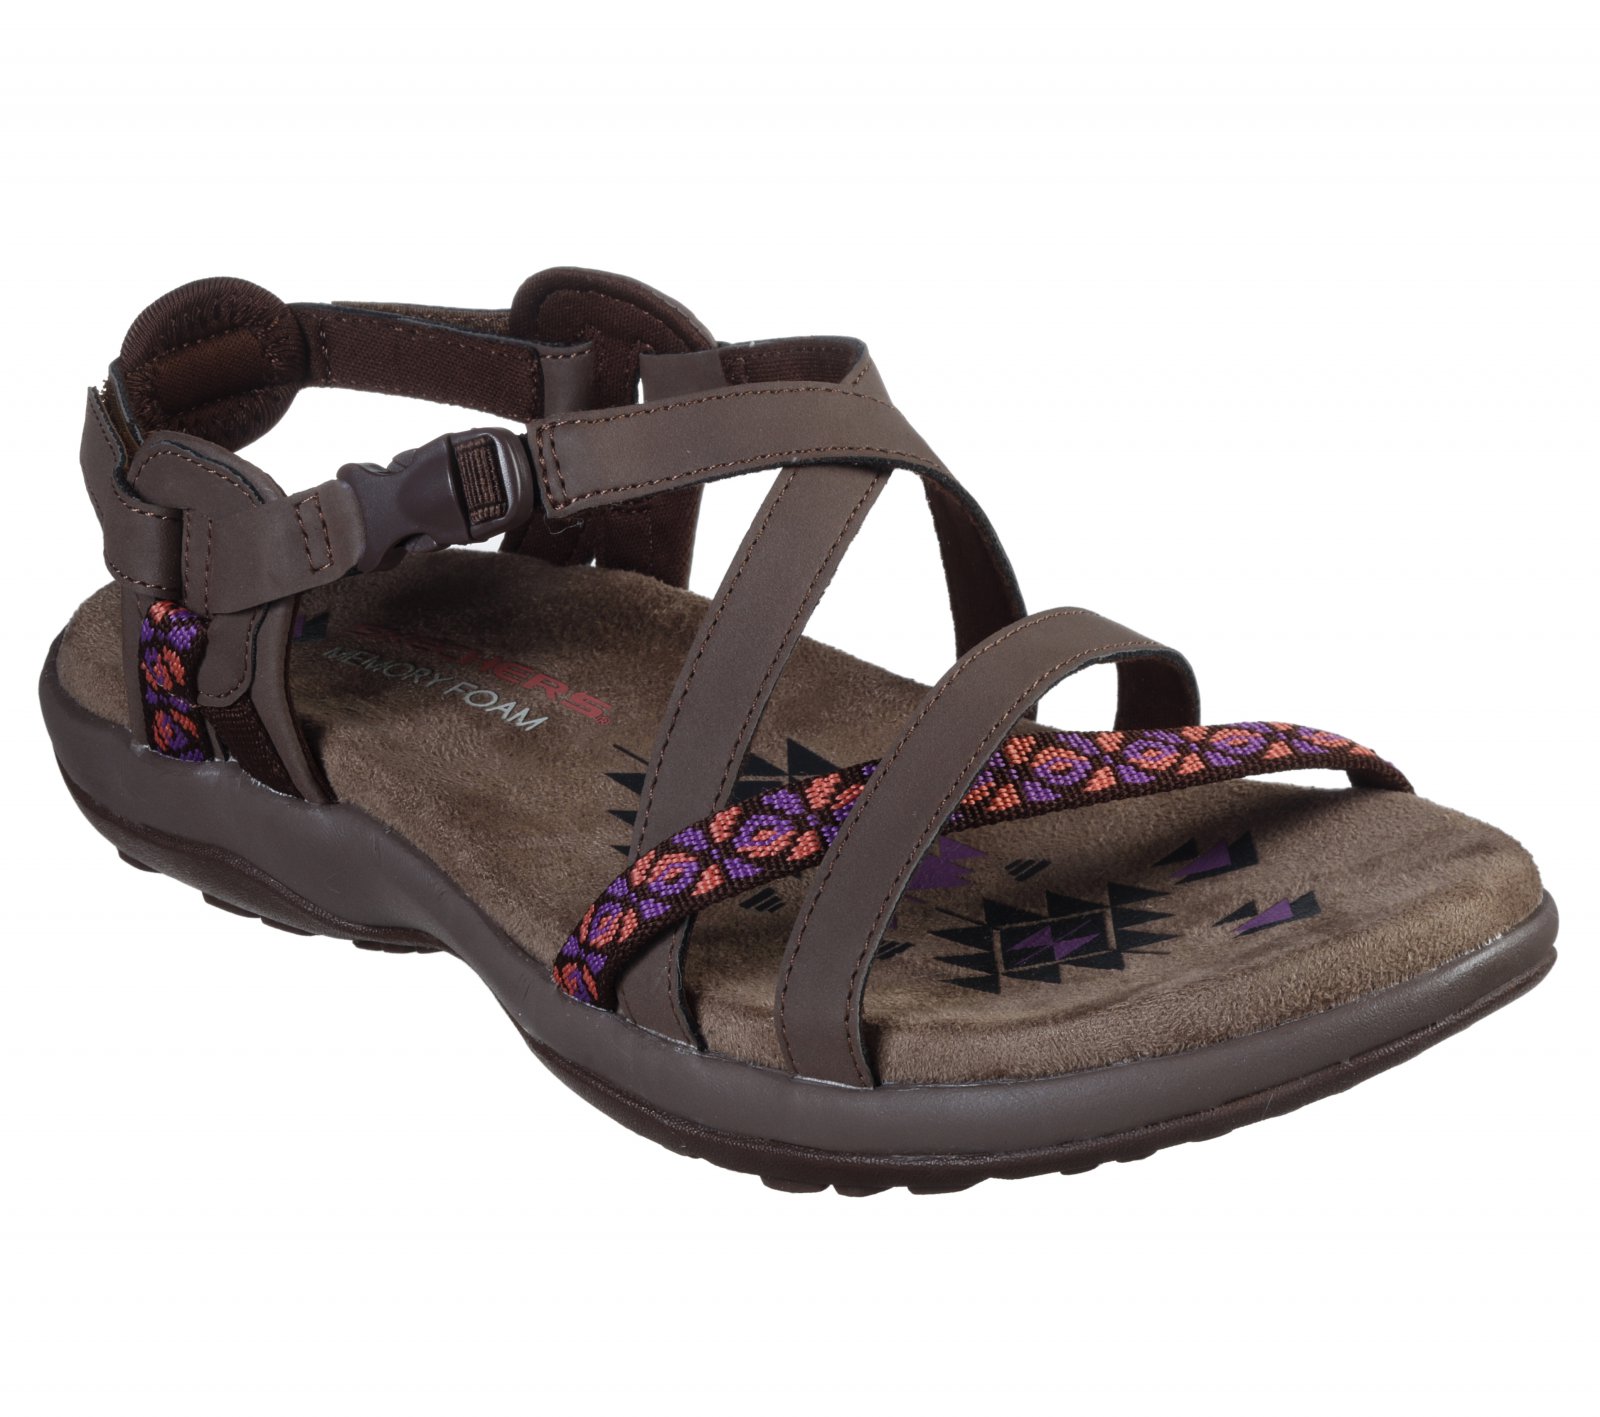 Sandale femei Skechers culoare Maro, cod: 40955 CHOC